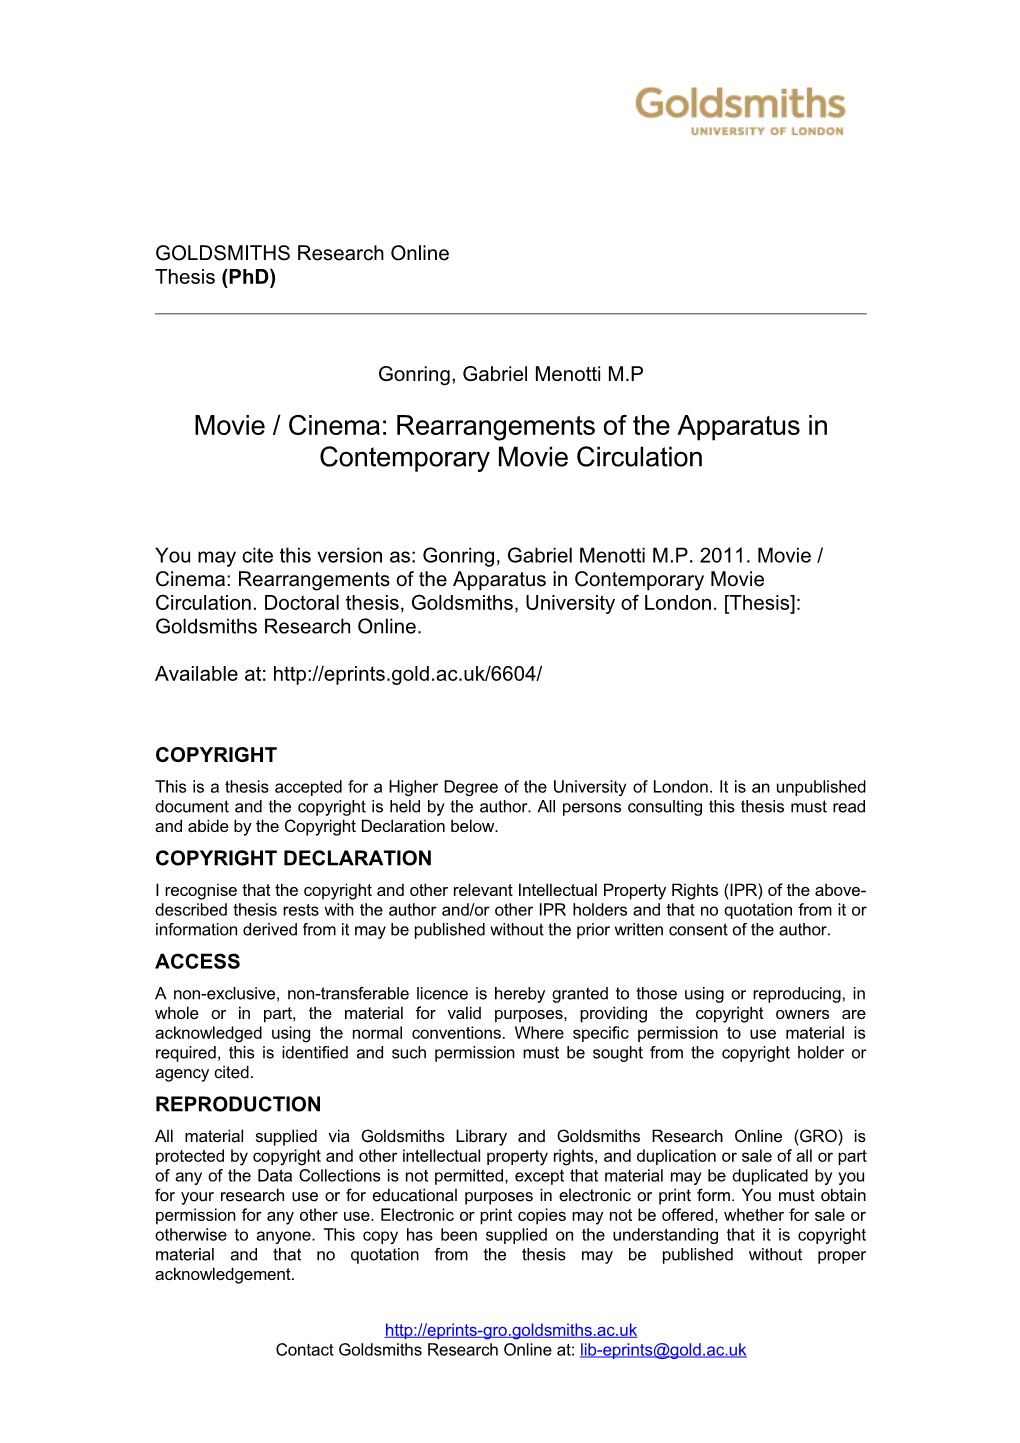 Movie / Cinema: Rearrangements of the Apparatus in Contemporary Movie Circulation